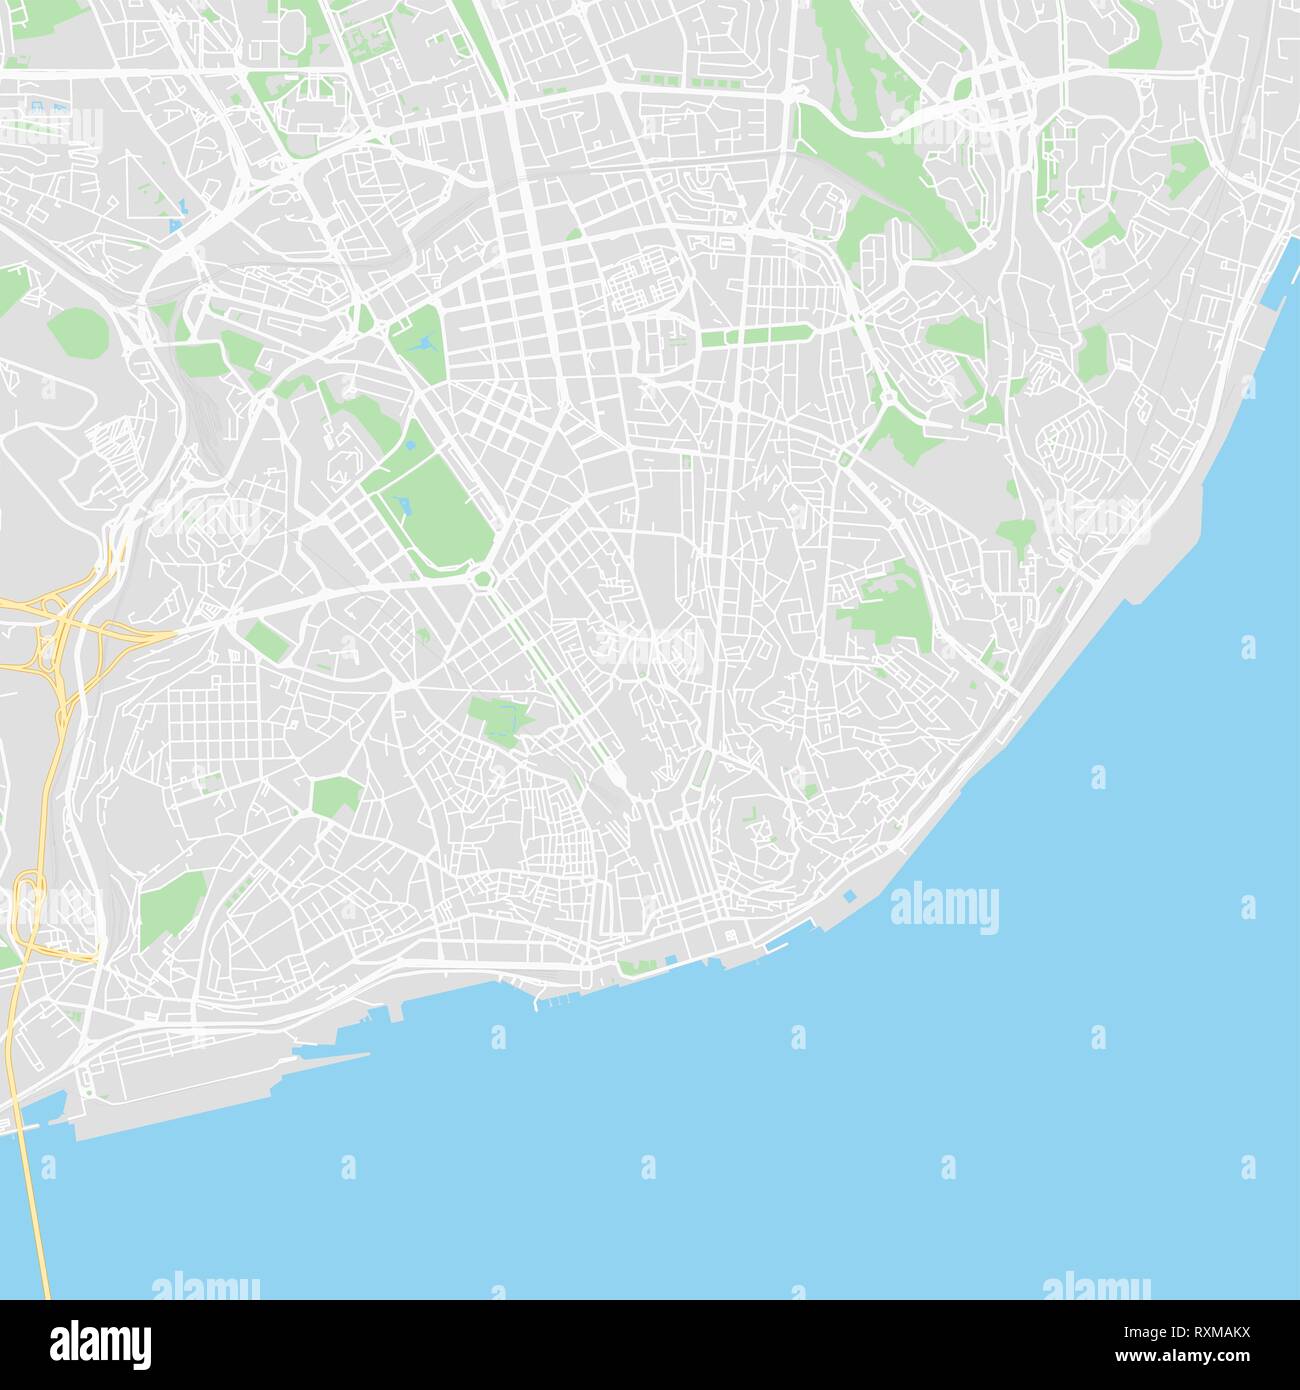 Downtown Vektorkarte von Lissabon, Portugal. Diese druckbare Karte von Lissabon enthält Linien und klassische farbigen Formen für die Landmasse, Parks, Wasser, Major und Stock Vektor